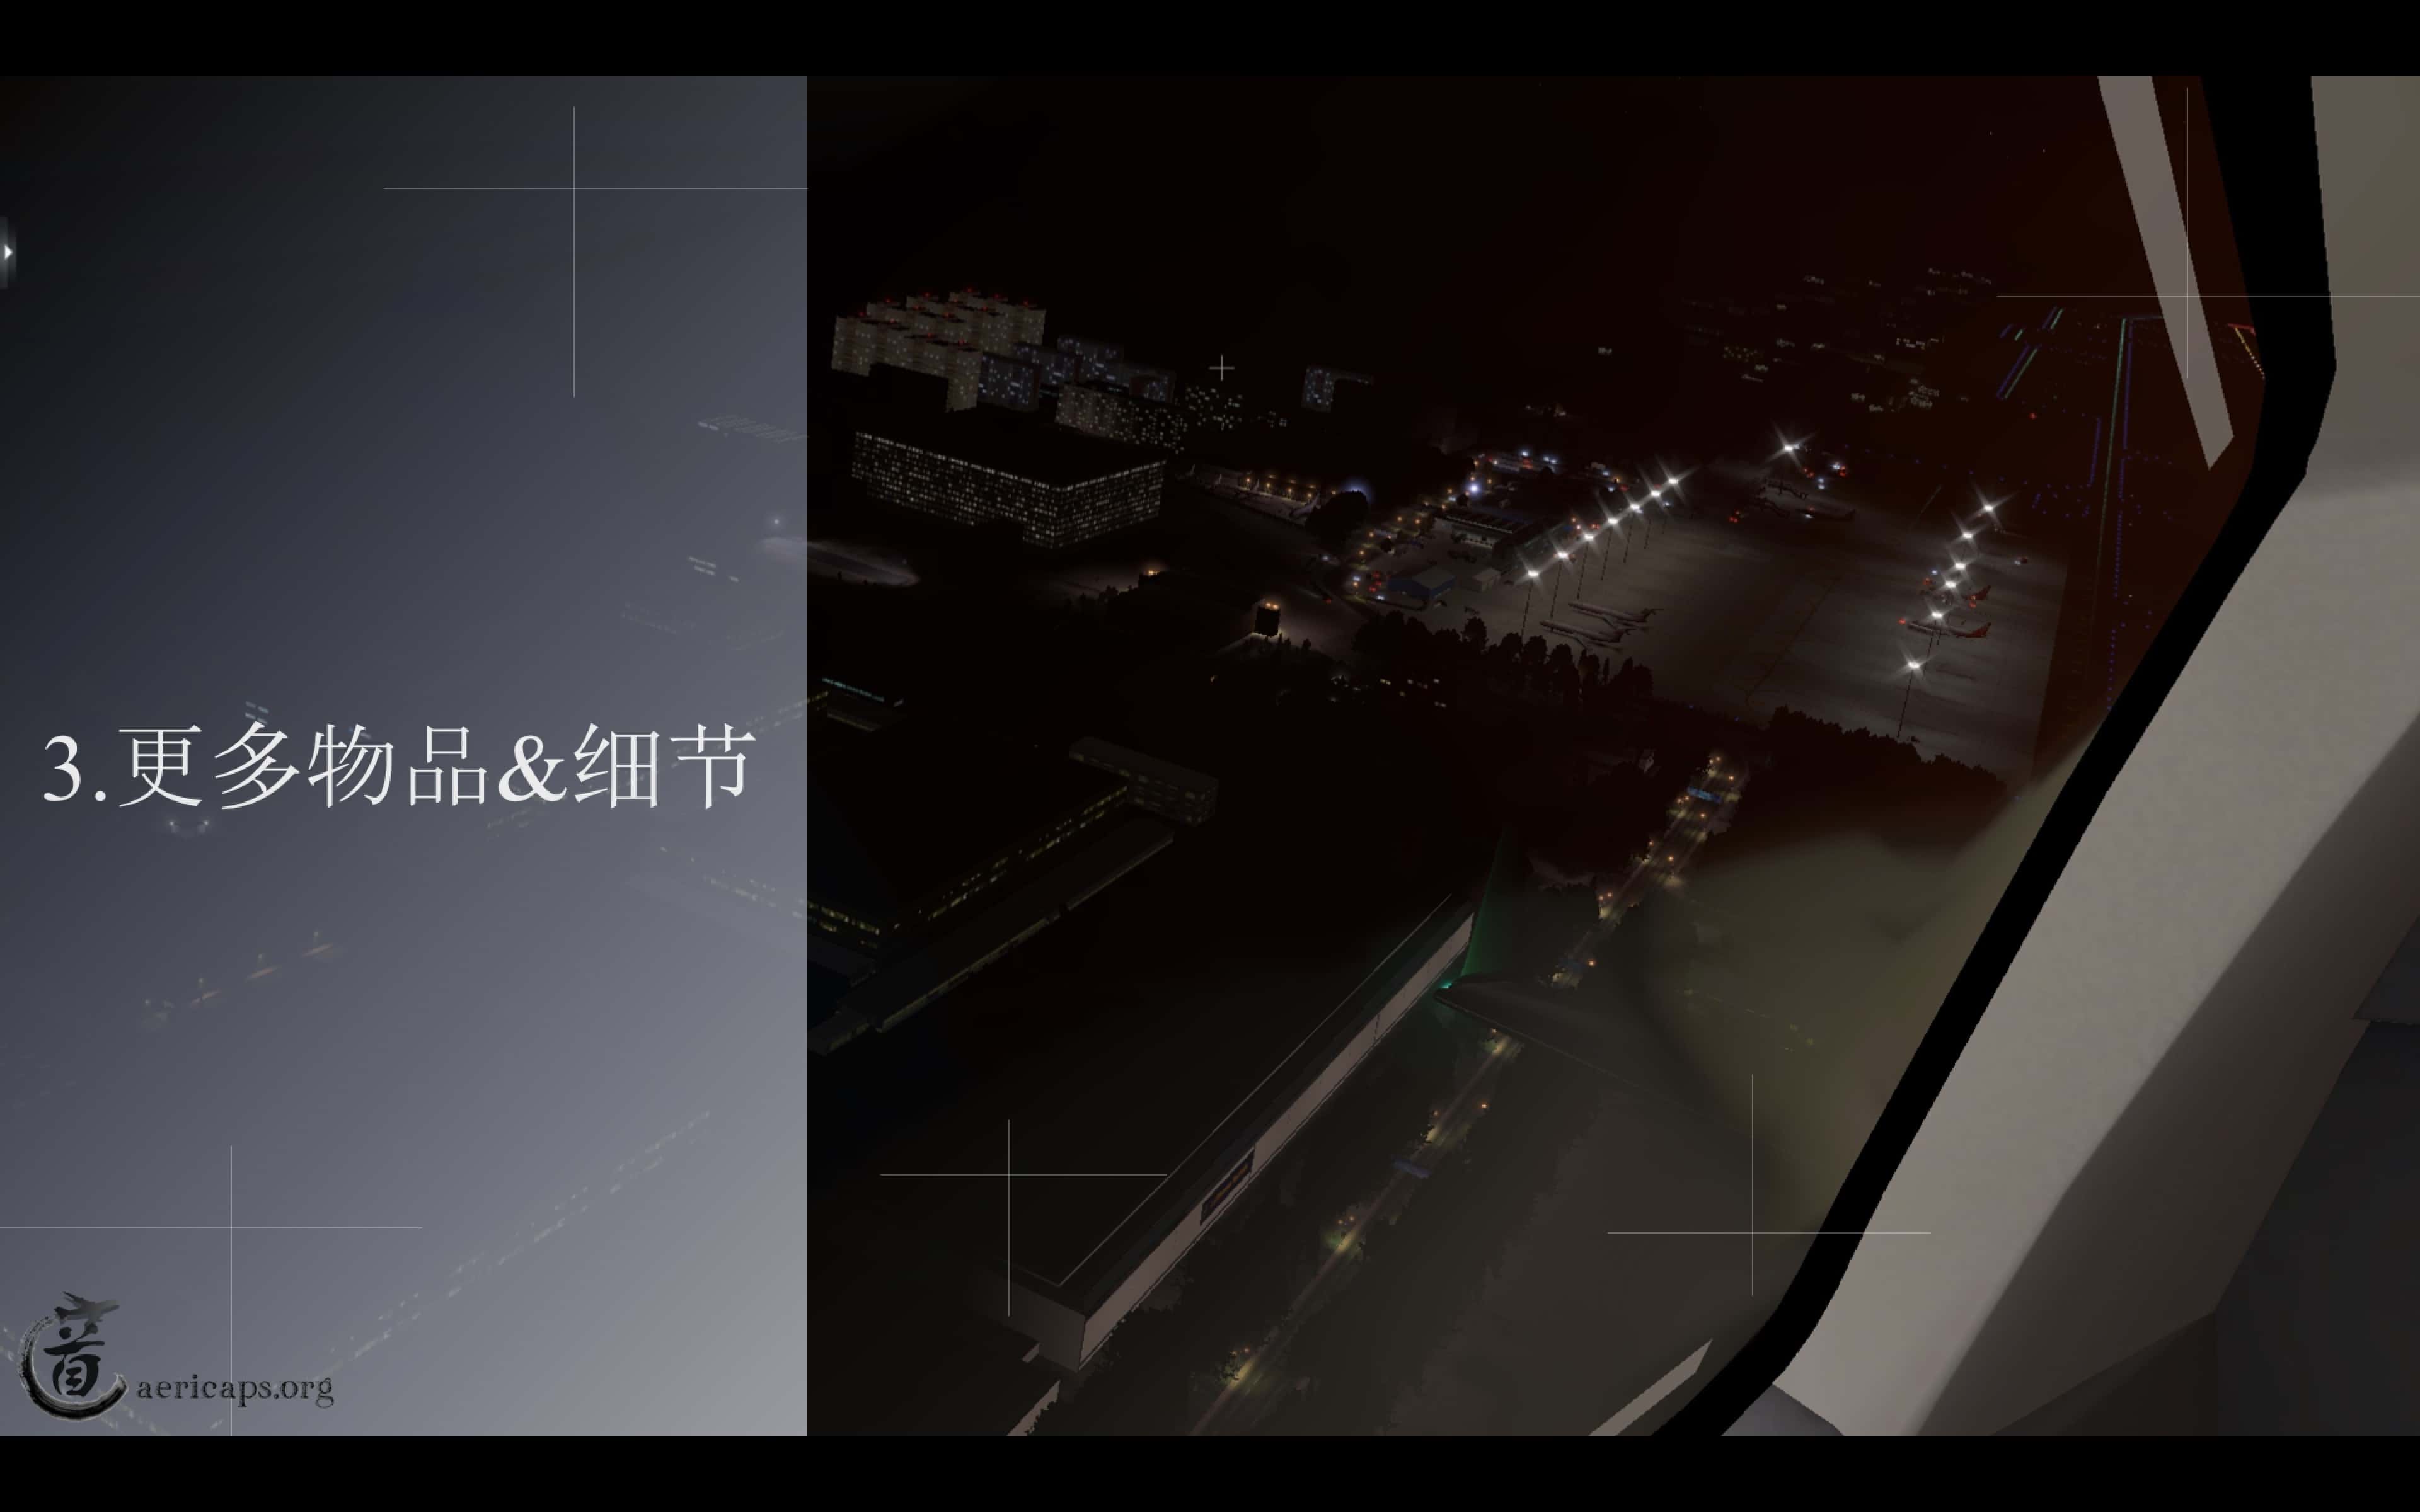 【预告】北京南苑机场地景宣传册-最终版-8965 